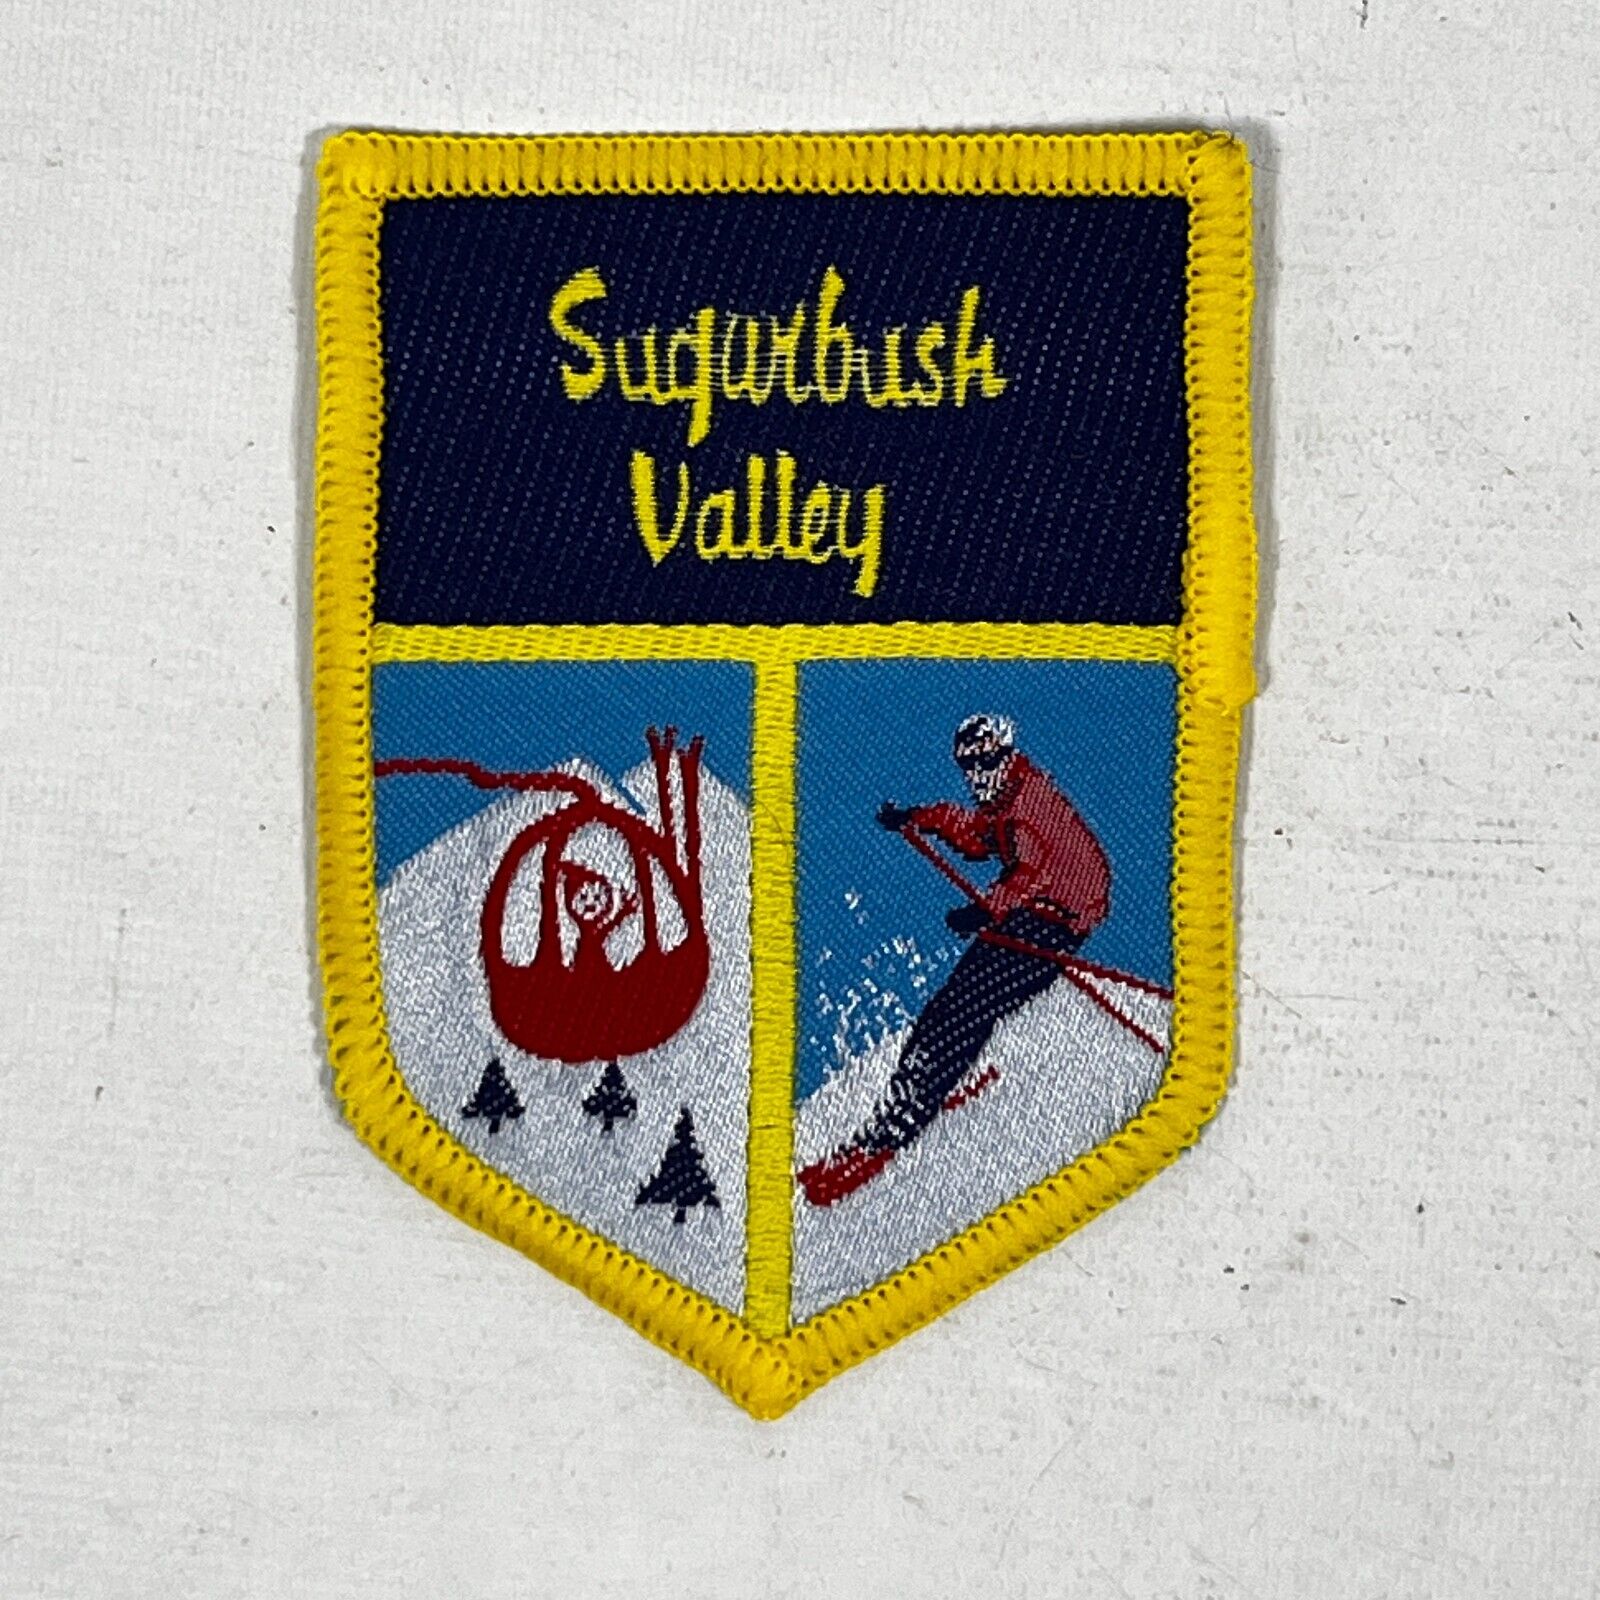 SUGARBUSH VALLEY Patch Ski Resort Mad River Valley Warren Vermont VT Souvenir